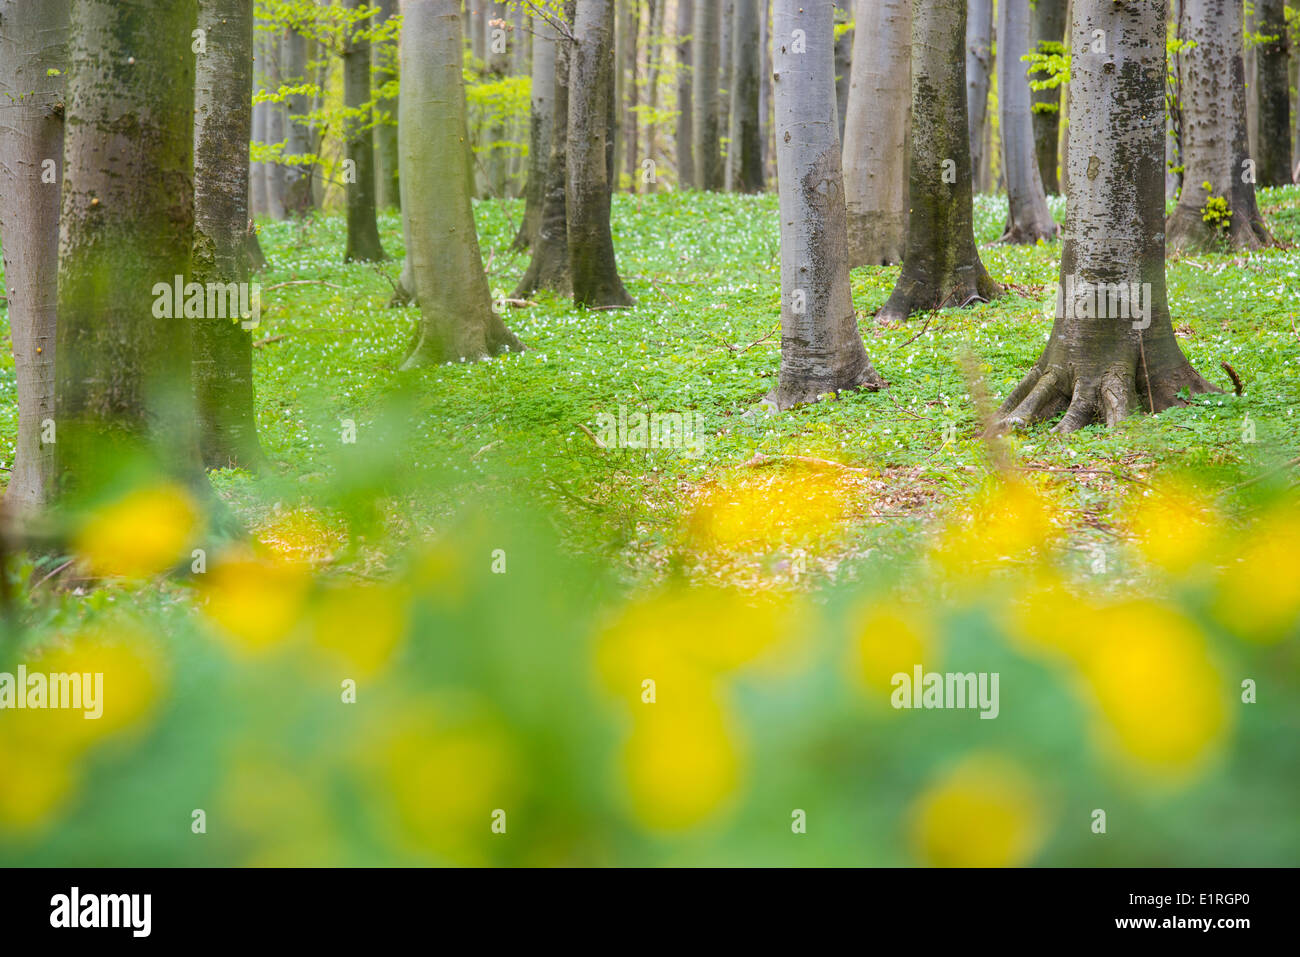 Foresta di faggio e legno di anemoni durante la primavera Foto Stock